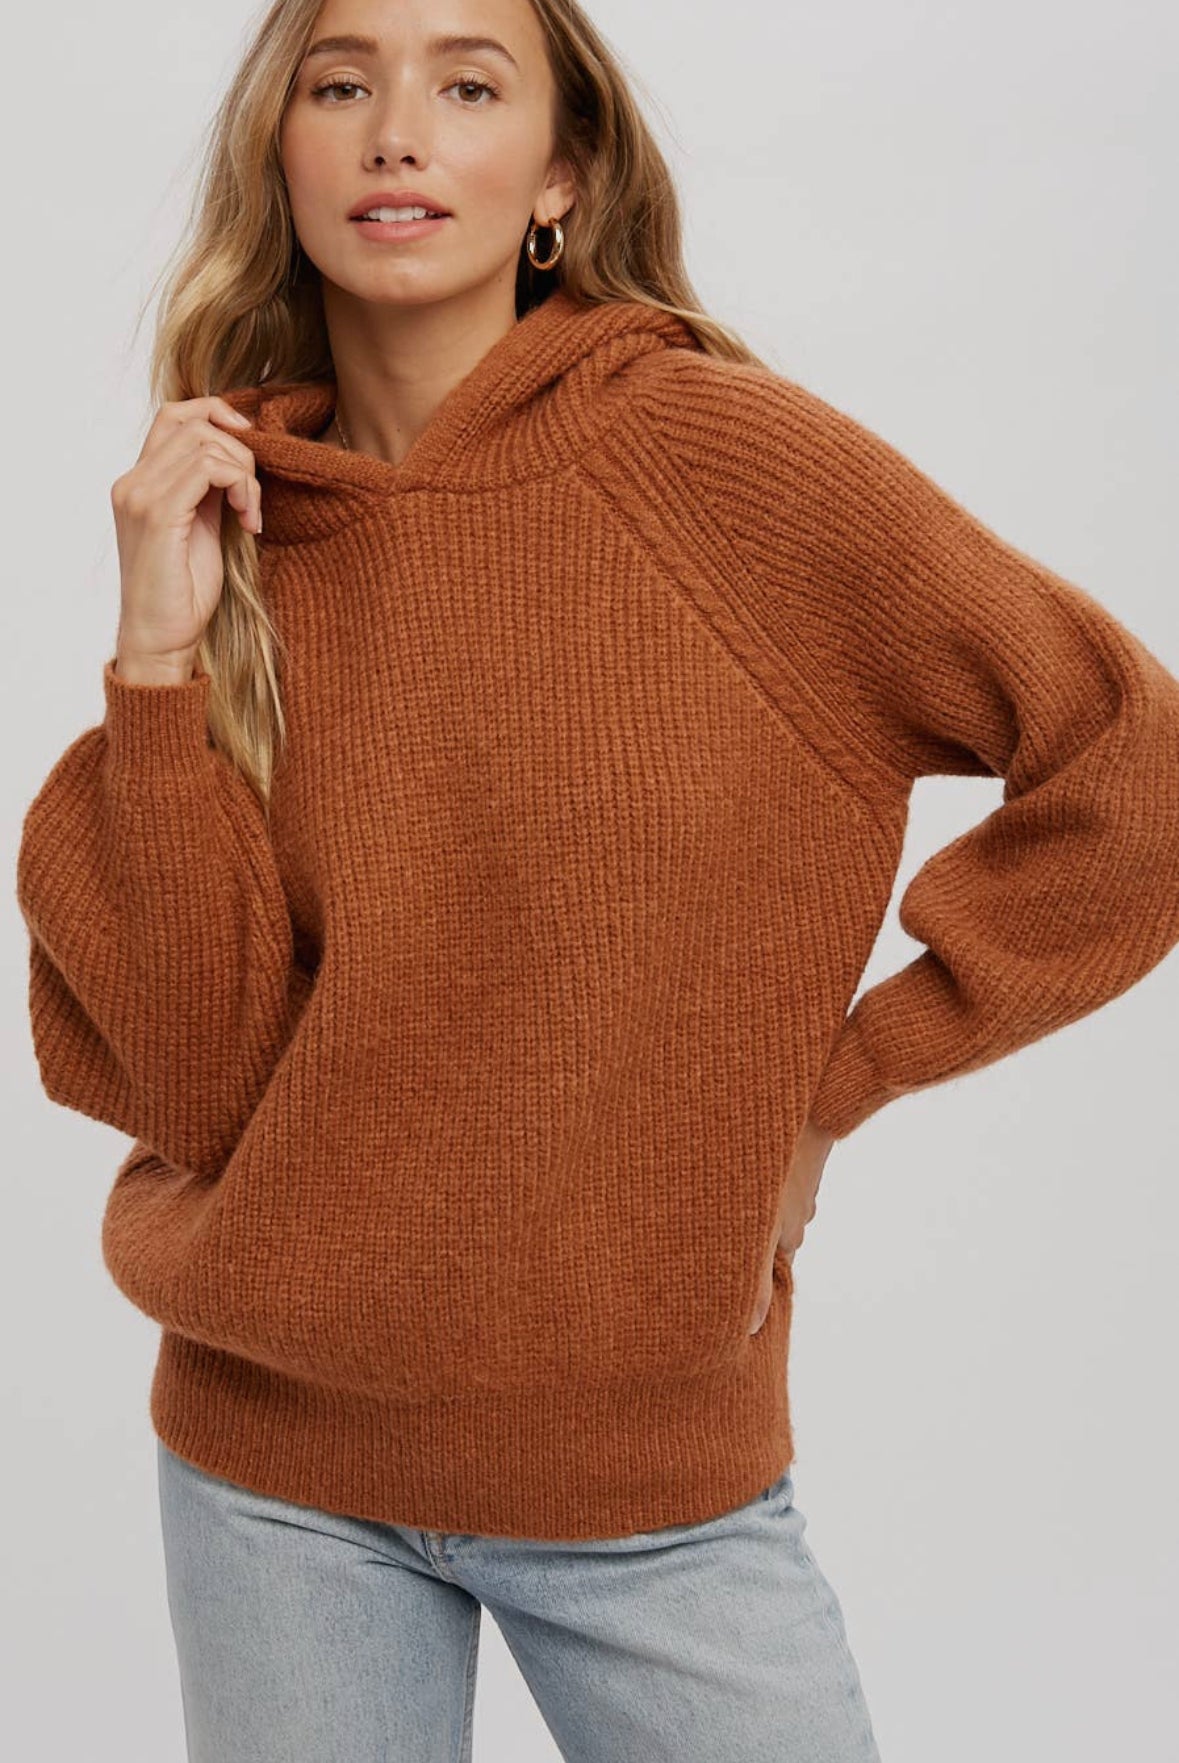 Sweater Hoodie - 3 Colors